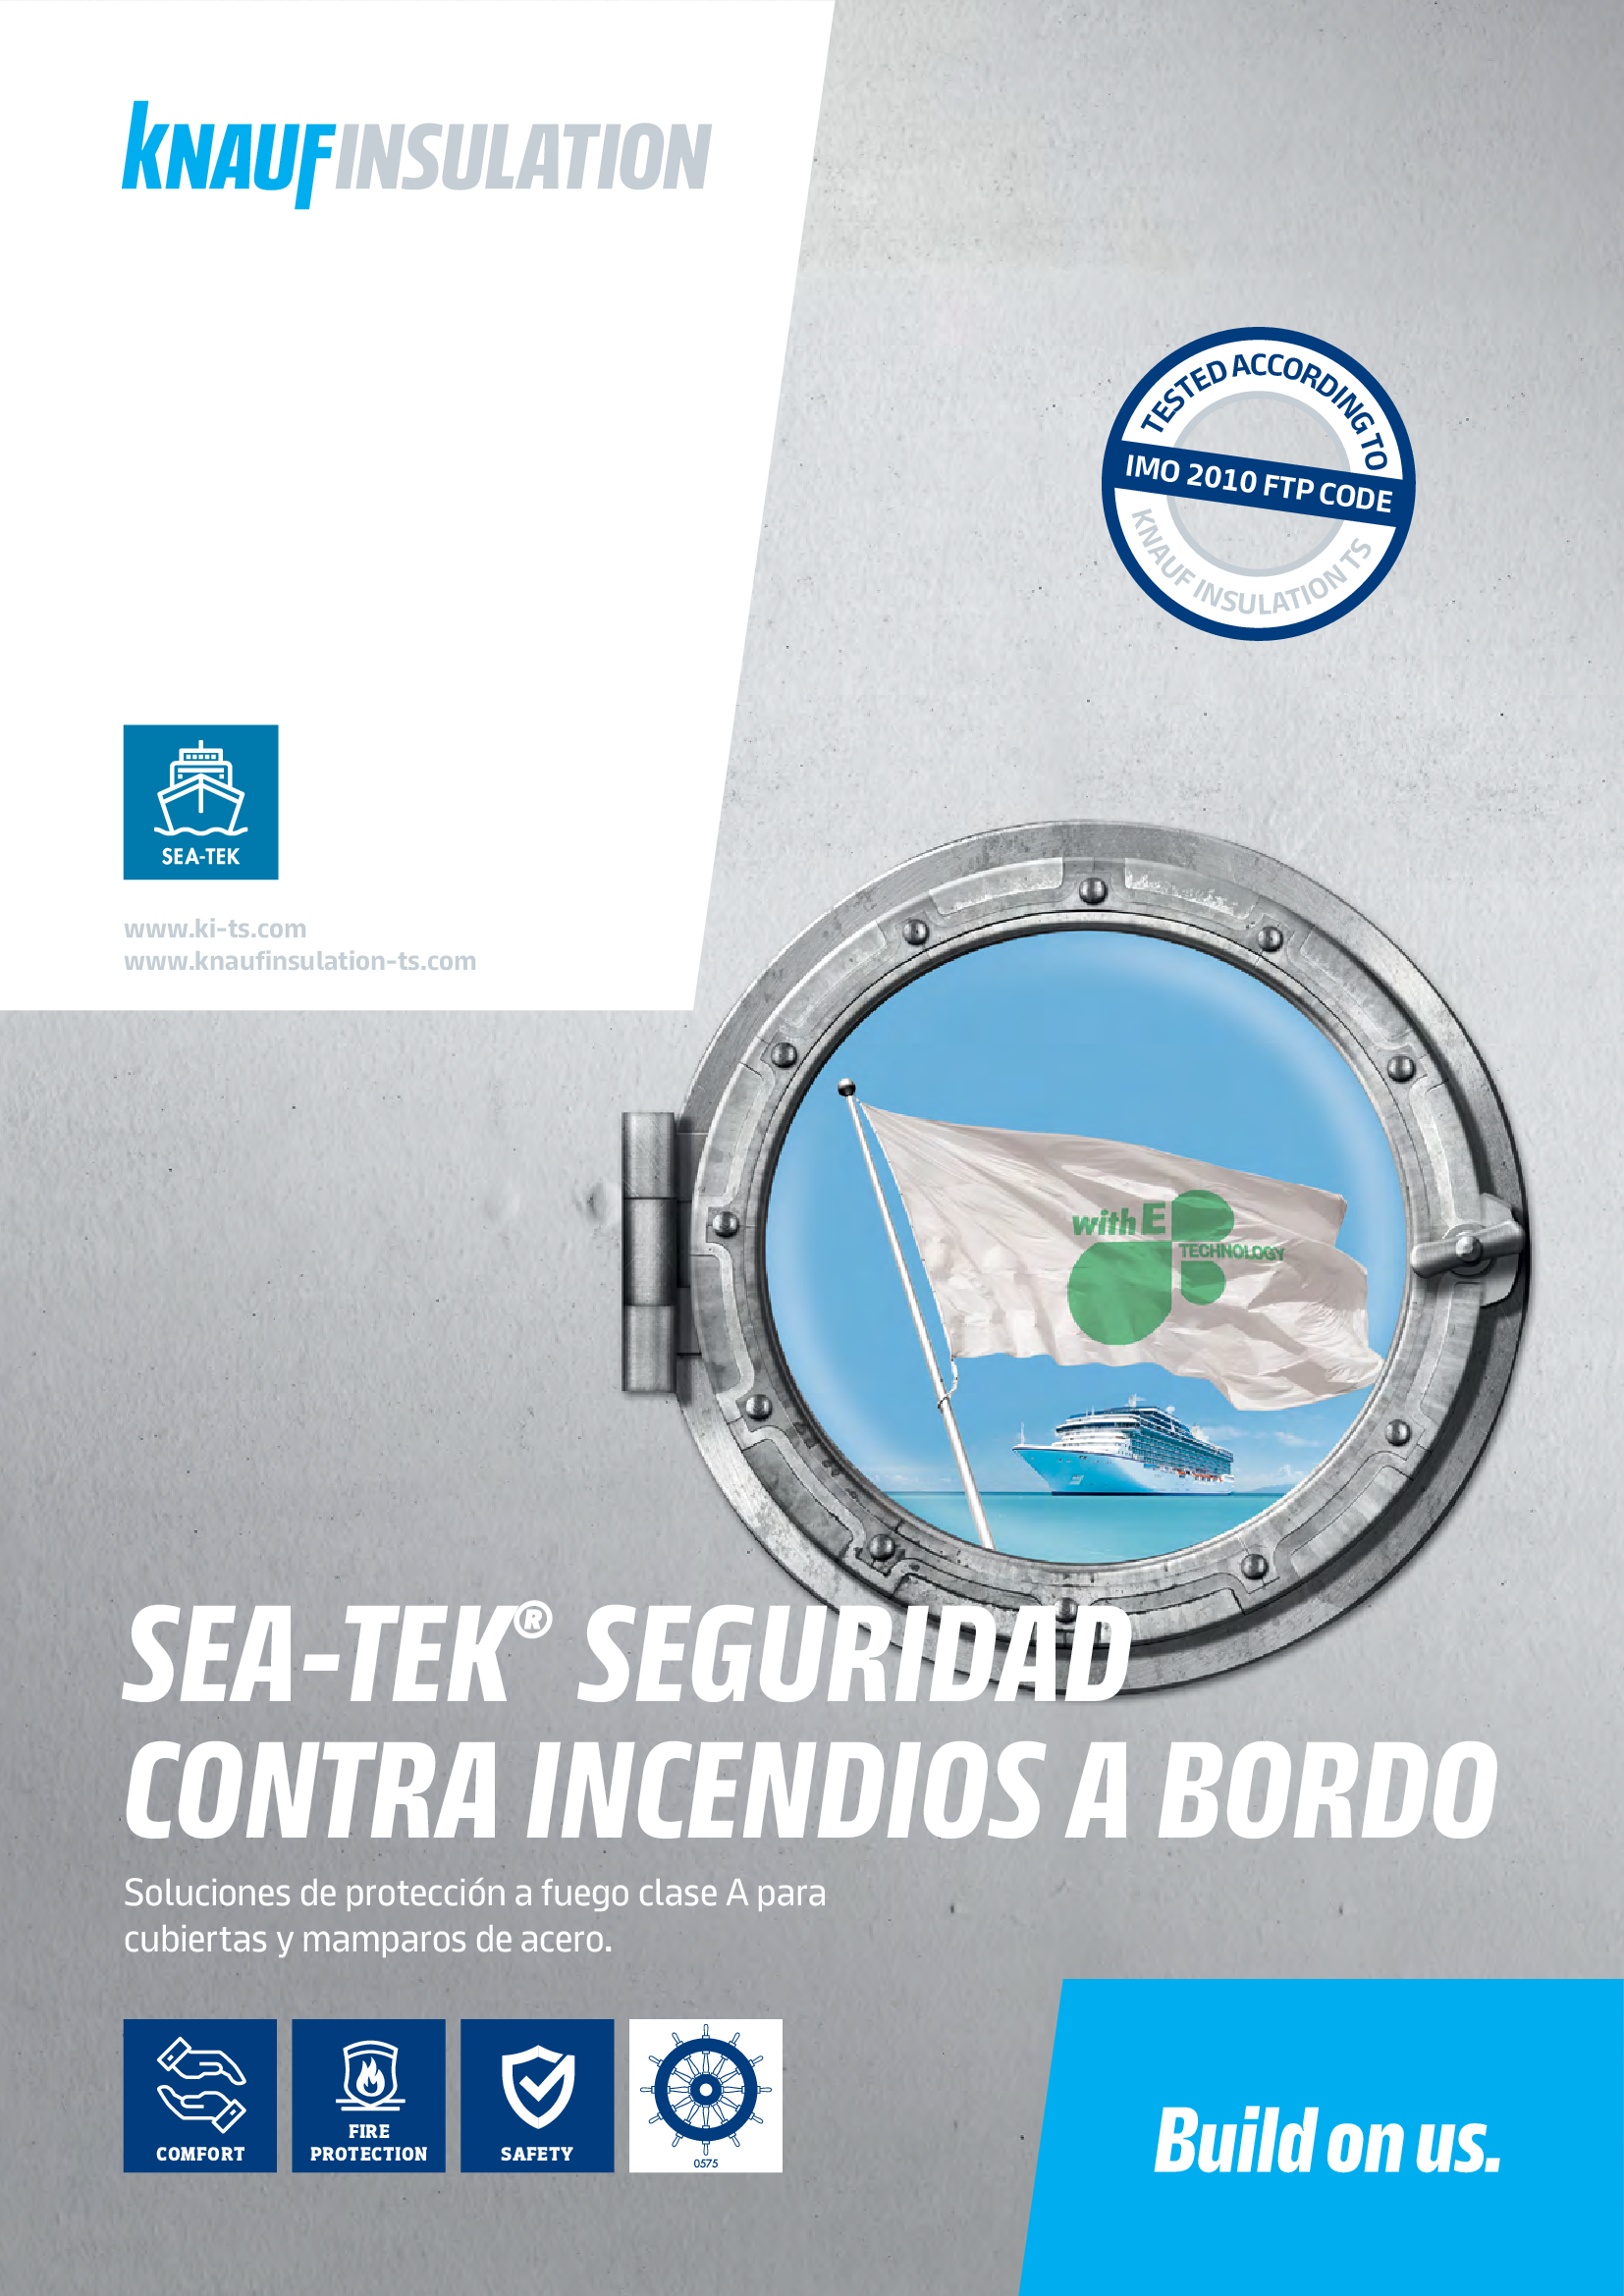 KITS Sea-teK folleto de seguridad contra incendios _ES